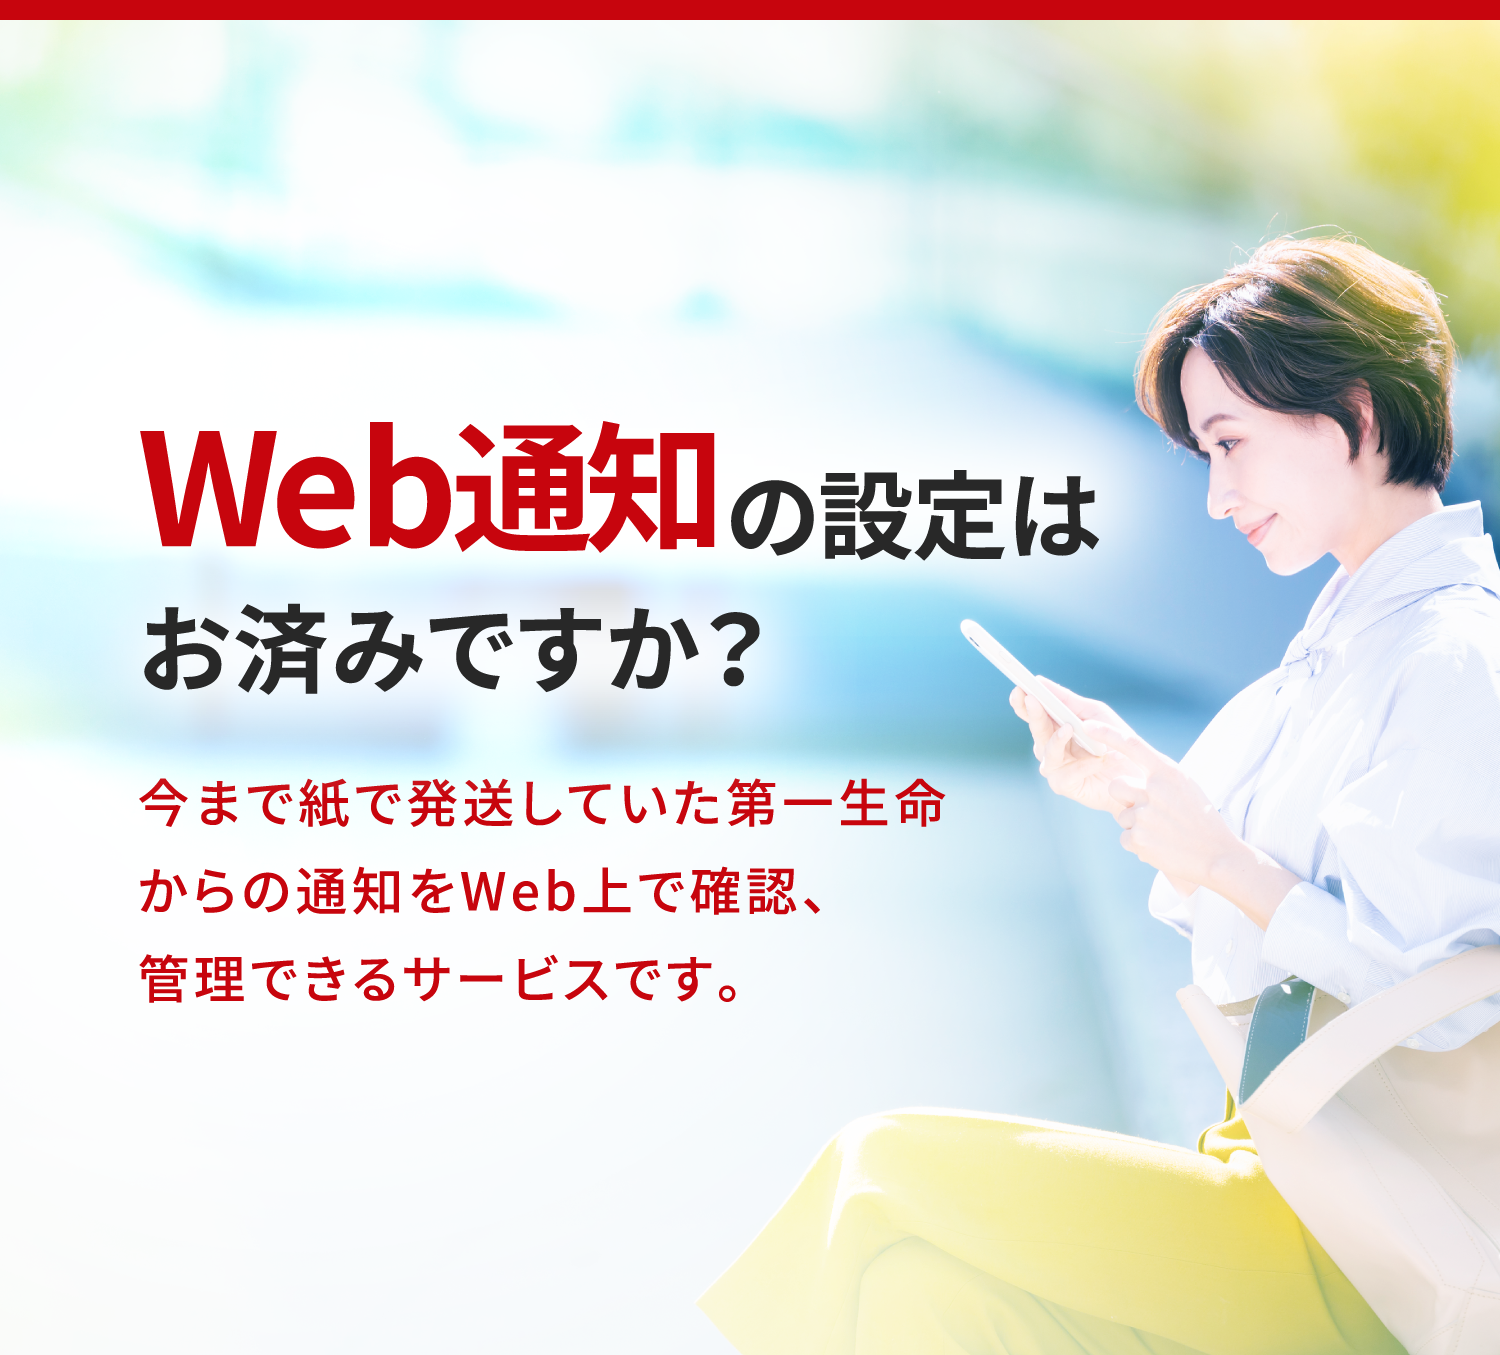 Web通知は通知をWeb上で確認、管理できるサービスです。